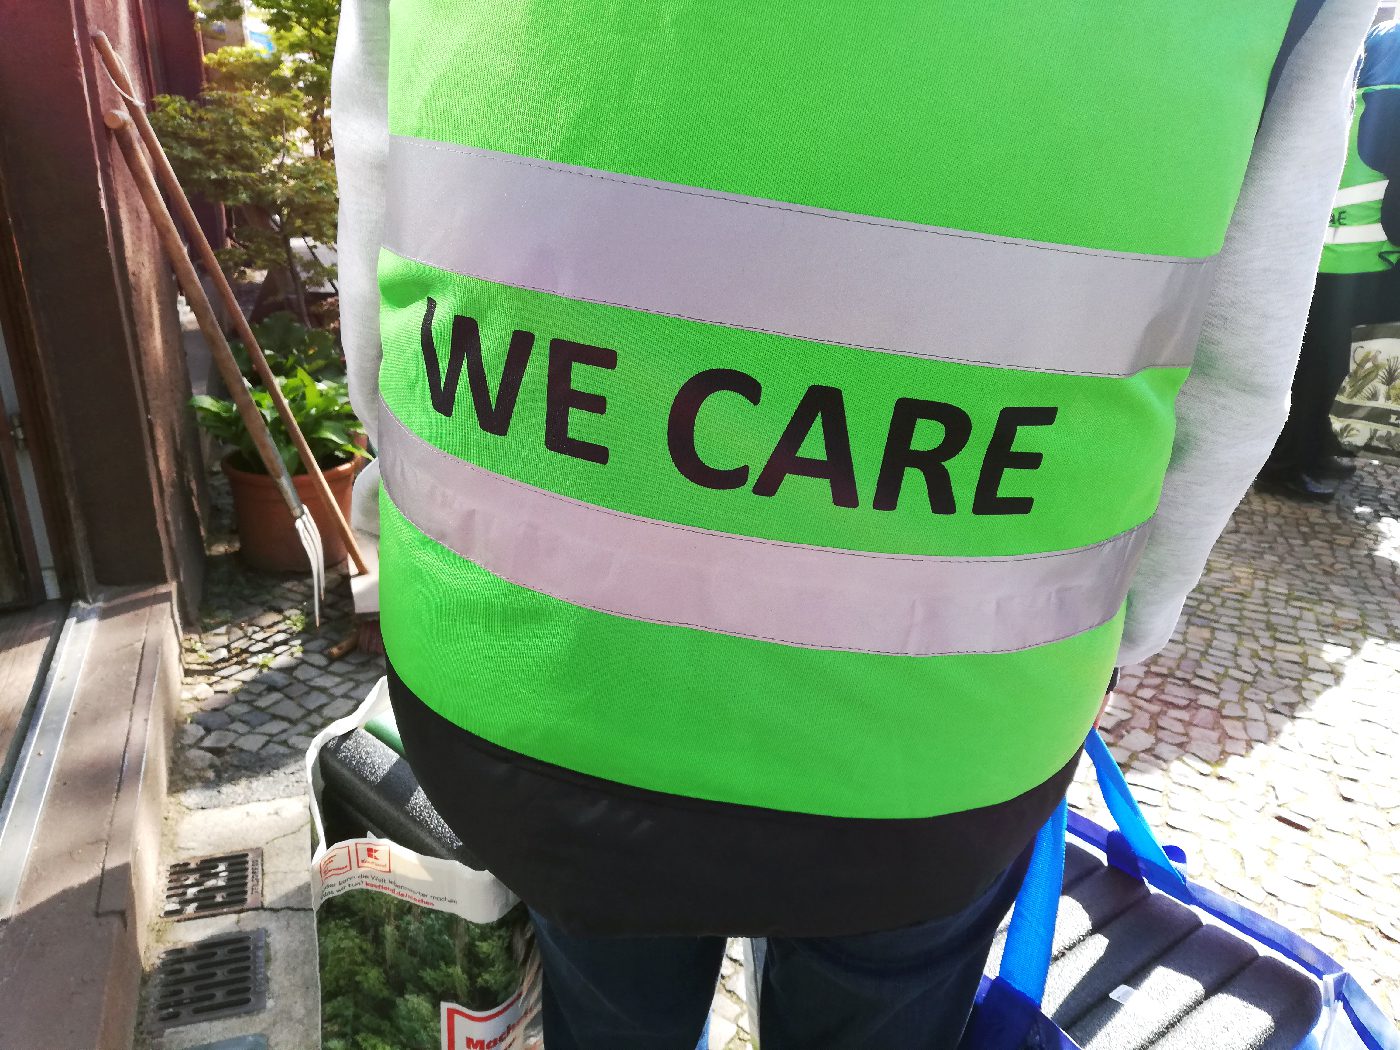 We Care: Der Name des Projekts steht auch auf den Westen der Teilnehmenden. Foto: Hensel